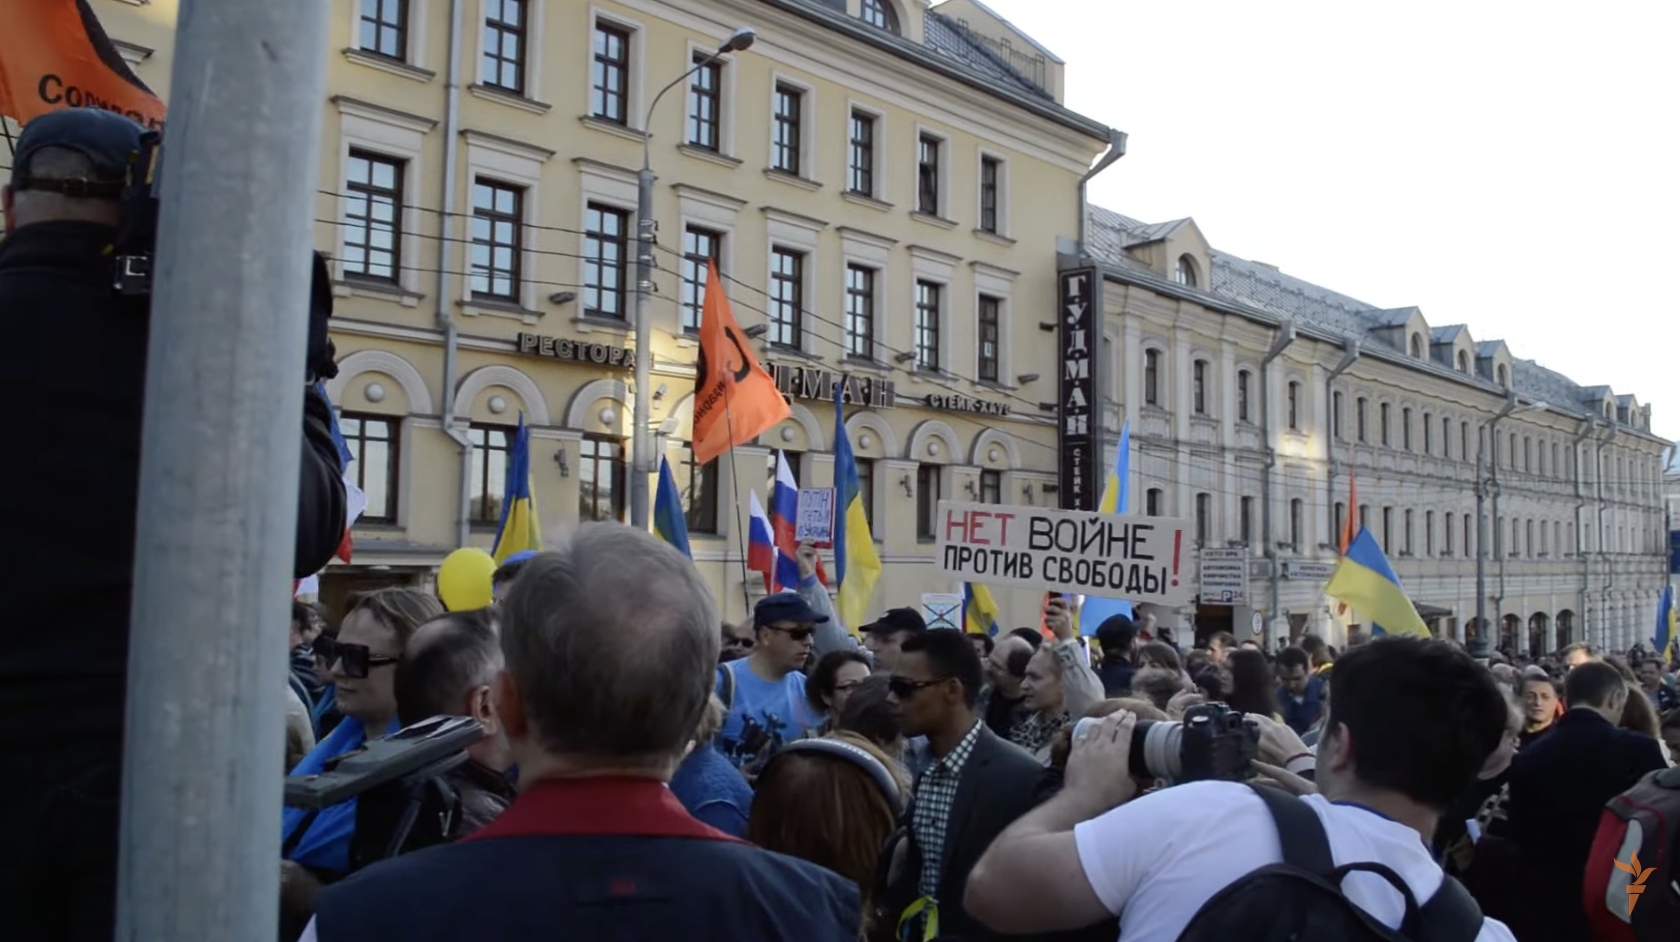 За 9 років з’явилася прірва: росіяни, які масово протестували проти війни в 2014 році, зараз закликають вбивати українців. Відео